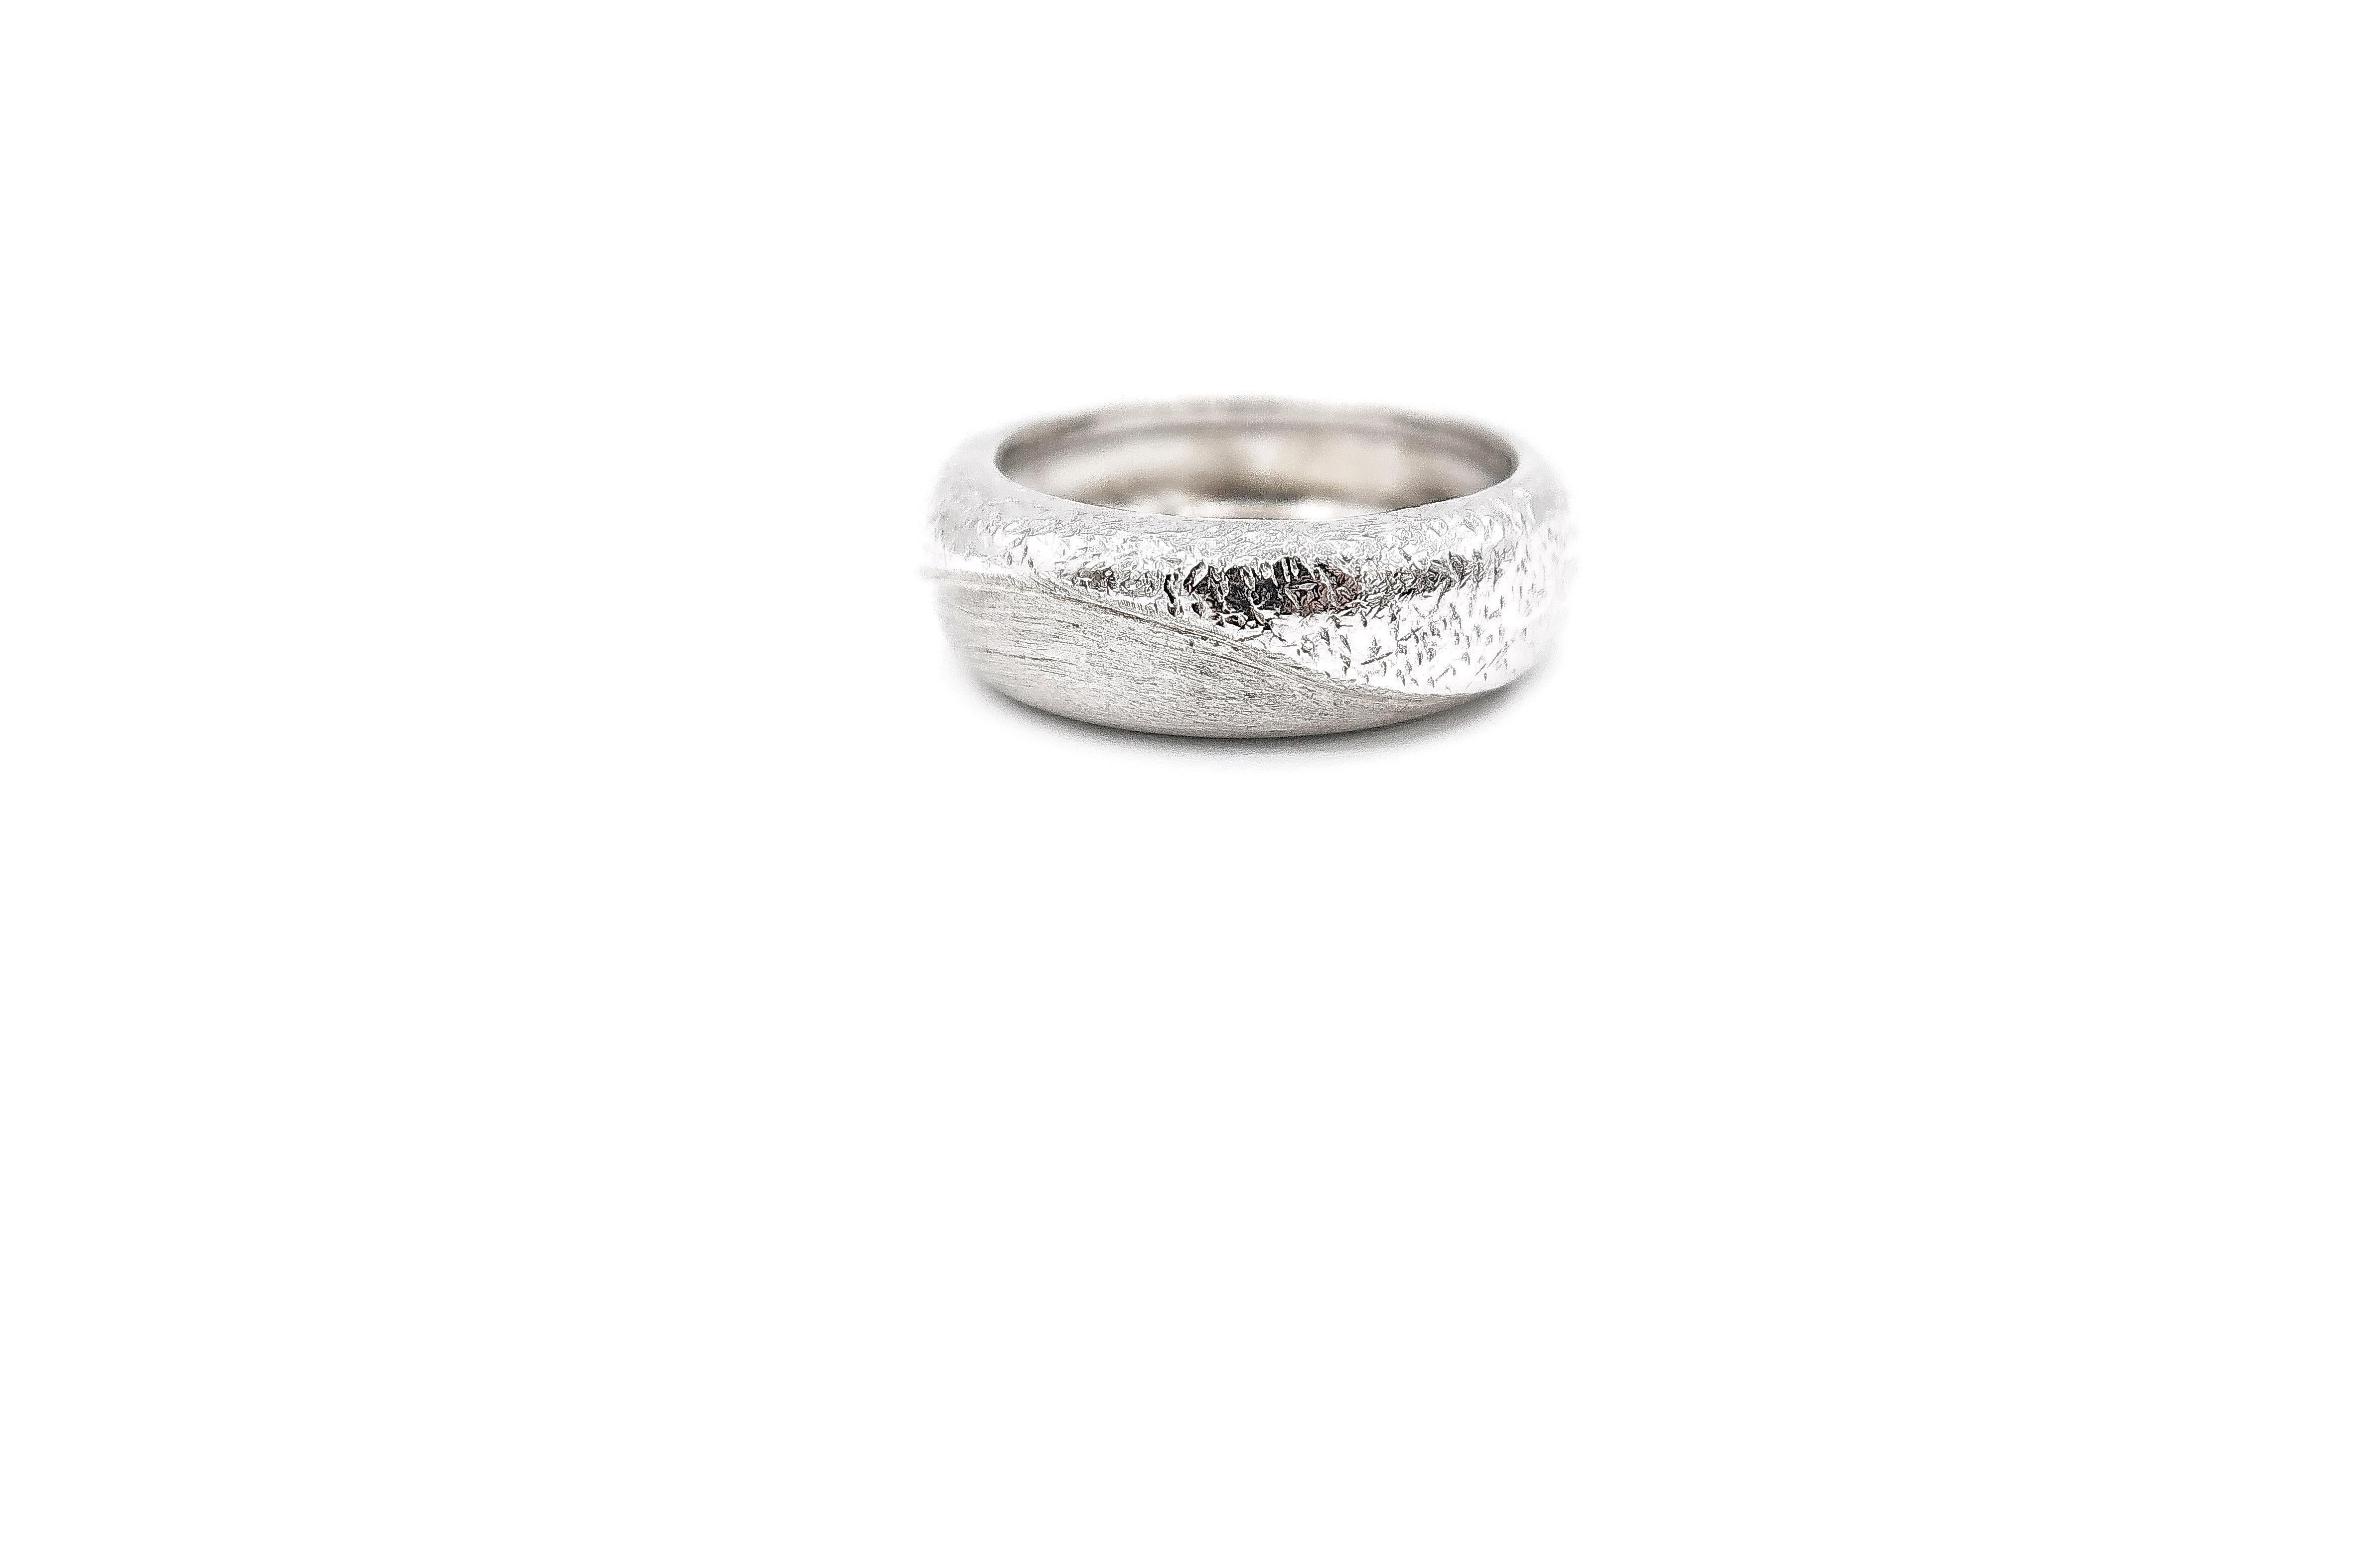 Textured 18 Karat White Gold Band Ring 

Ring size: 54 1/2, US 7
Gold: 18K 9.937g
